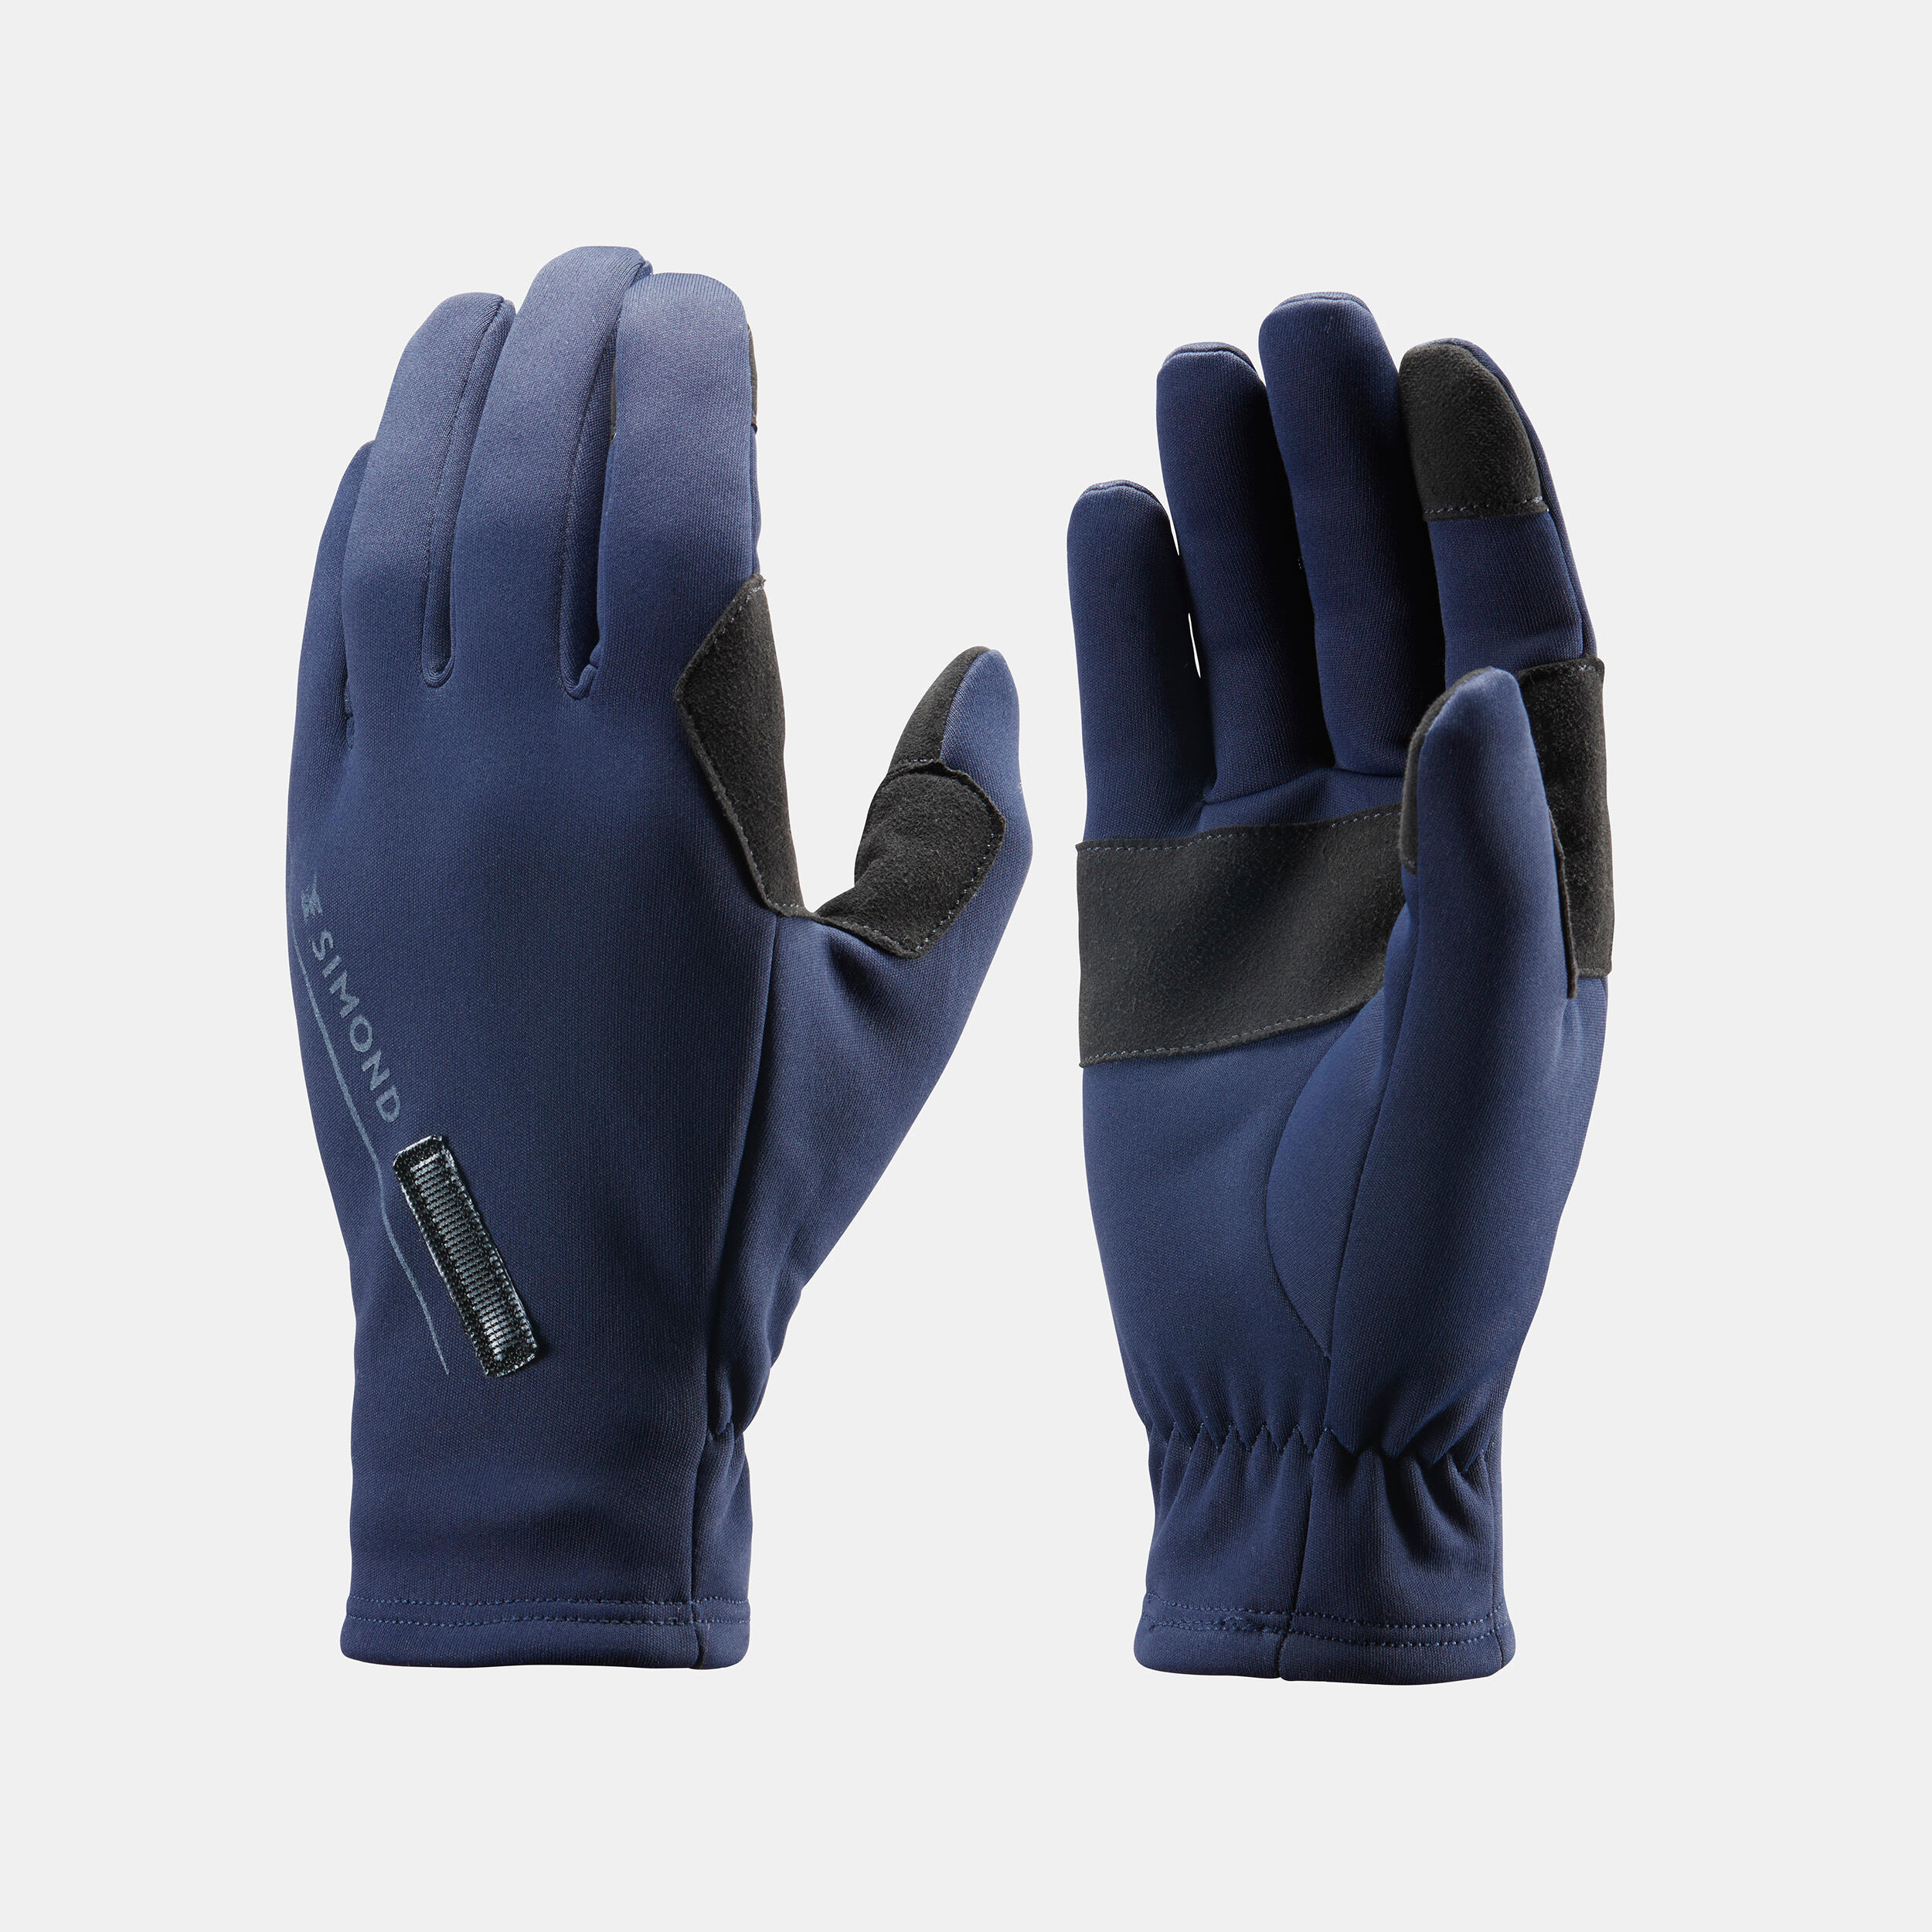 2-in-1 waterproof mountaineering gloves, black 5/9